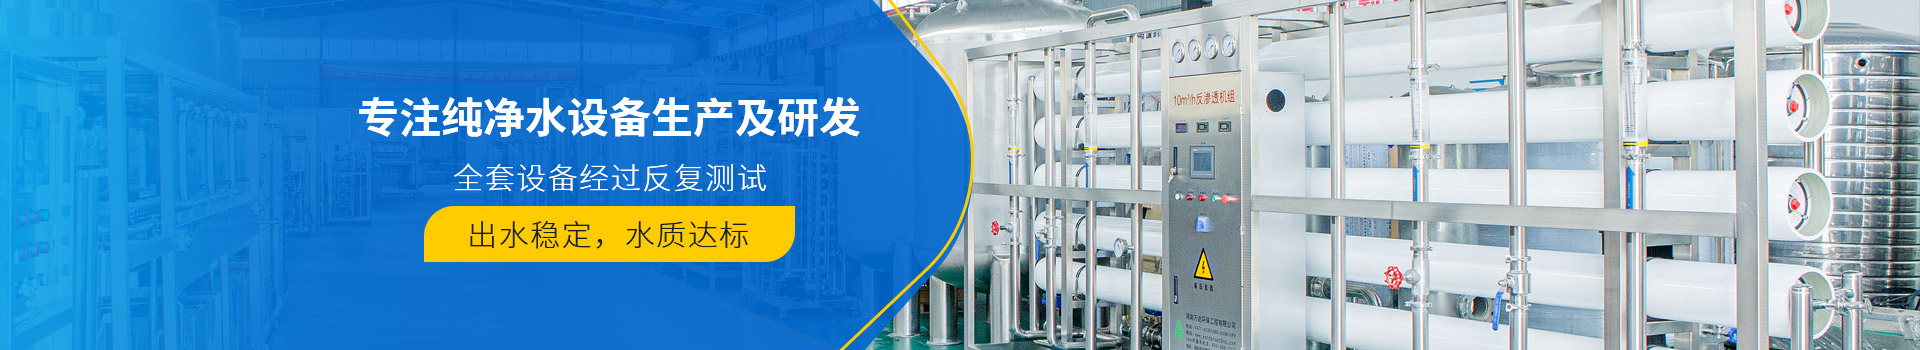 制药厂中央控制系统-自动化控制系统-武汉纯水设备厂家 (PC+WAP)-纯净水设备生产销售